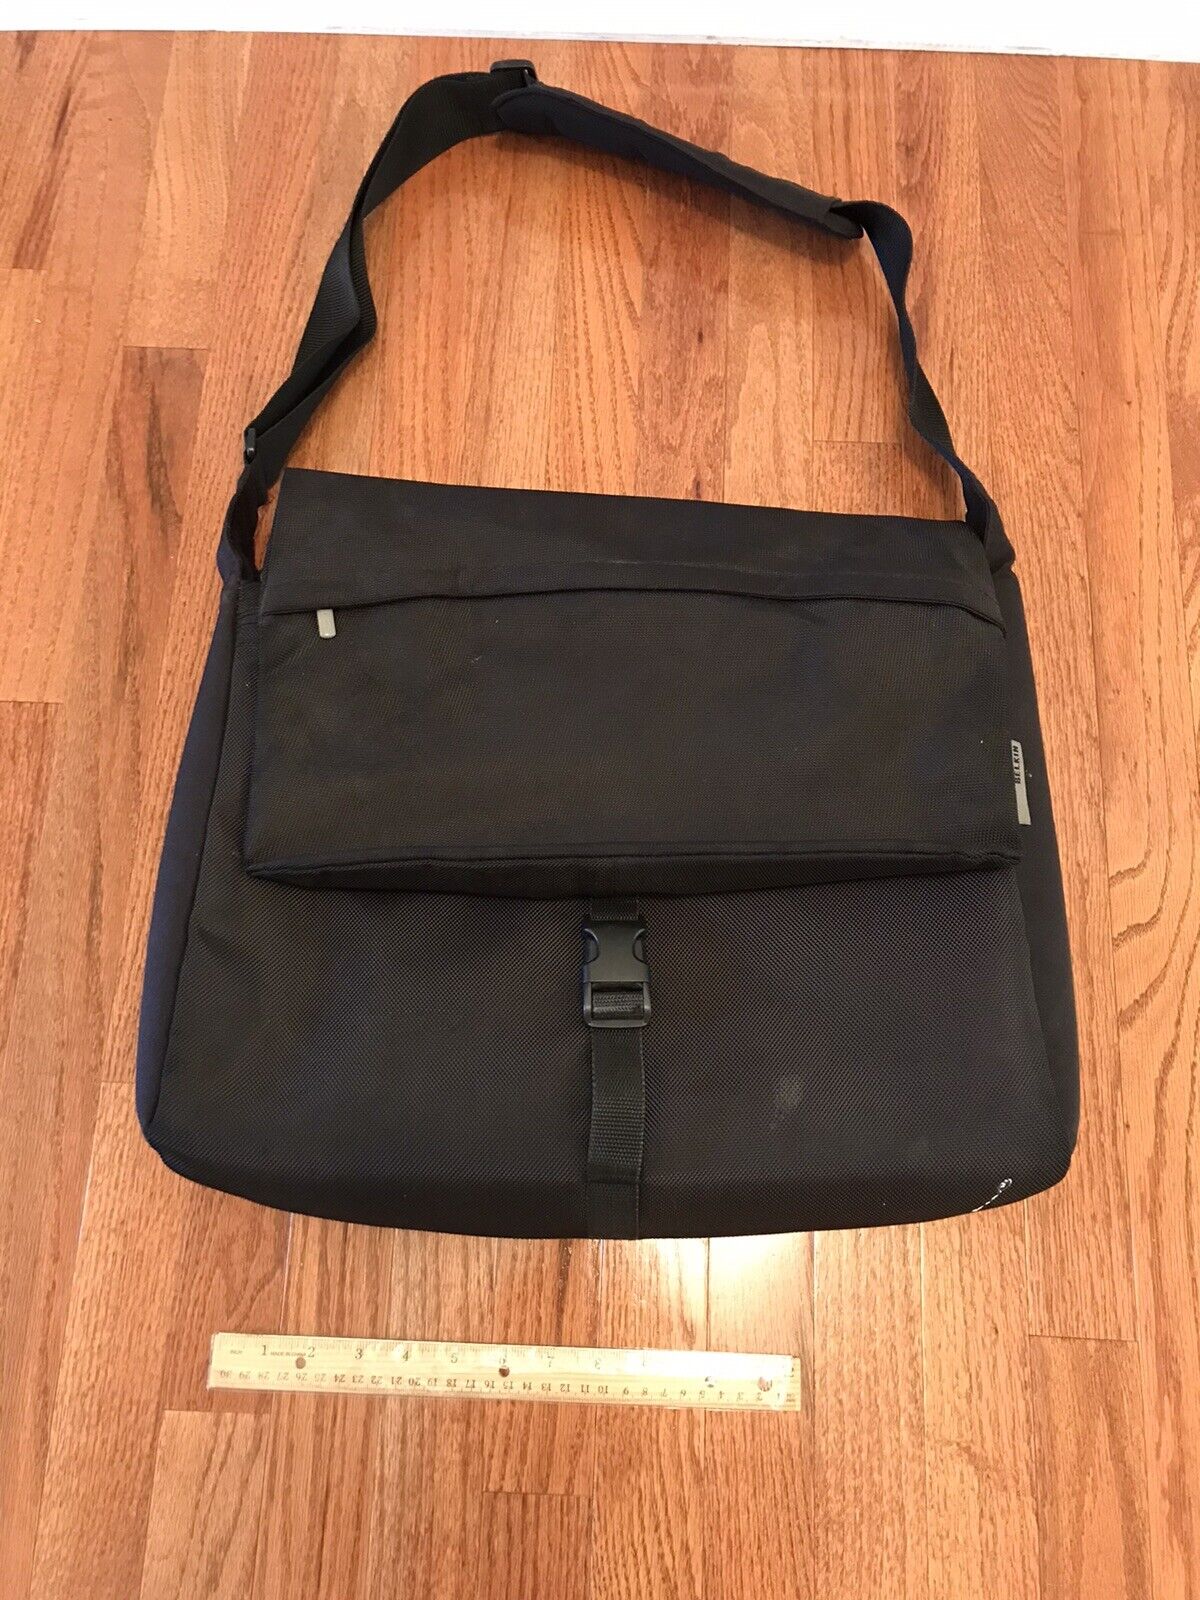 BELKIN Computer Large Laptop Sling Backpack Carrying Bag Black